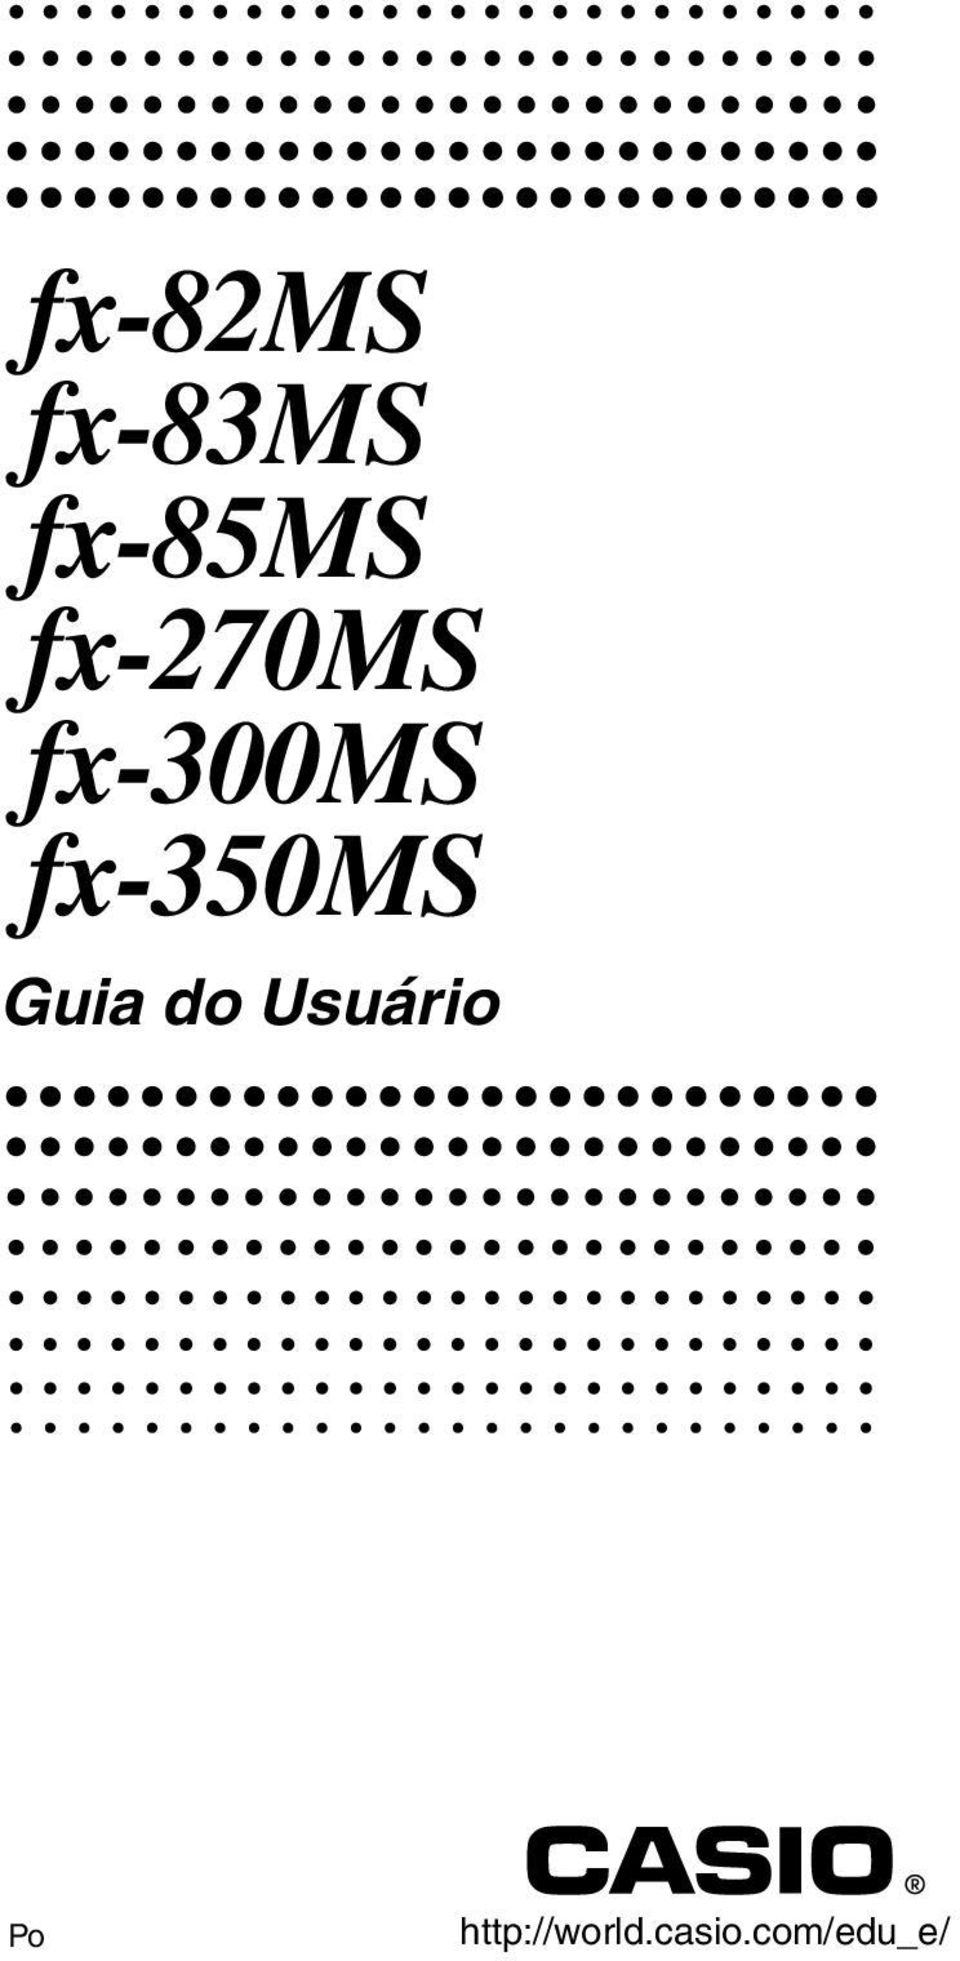 fx-350ms Guia do Usuário